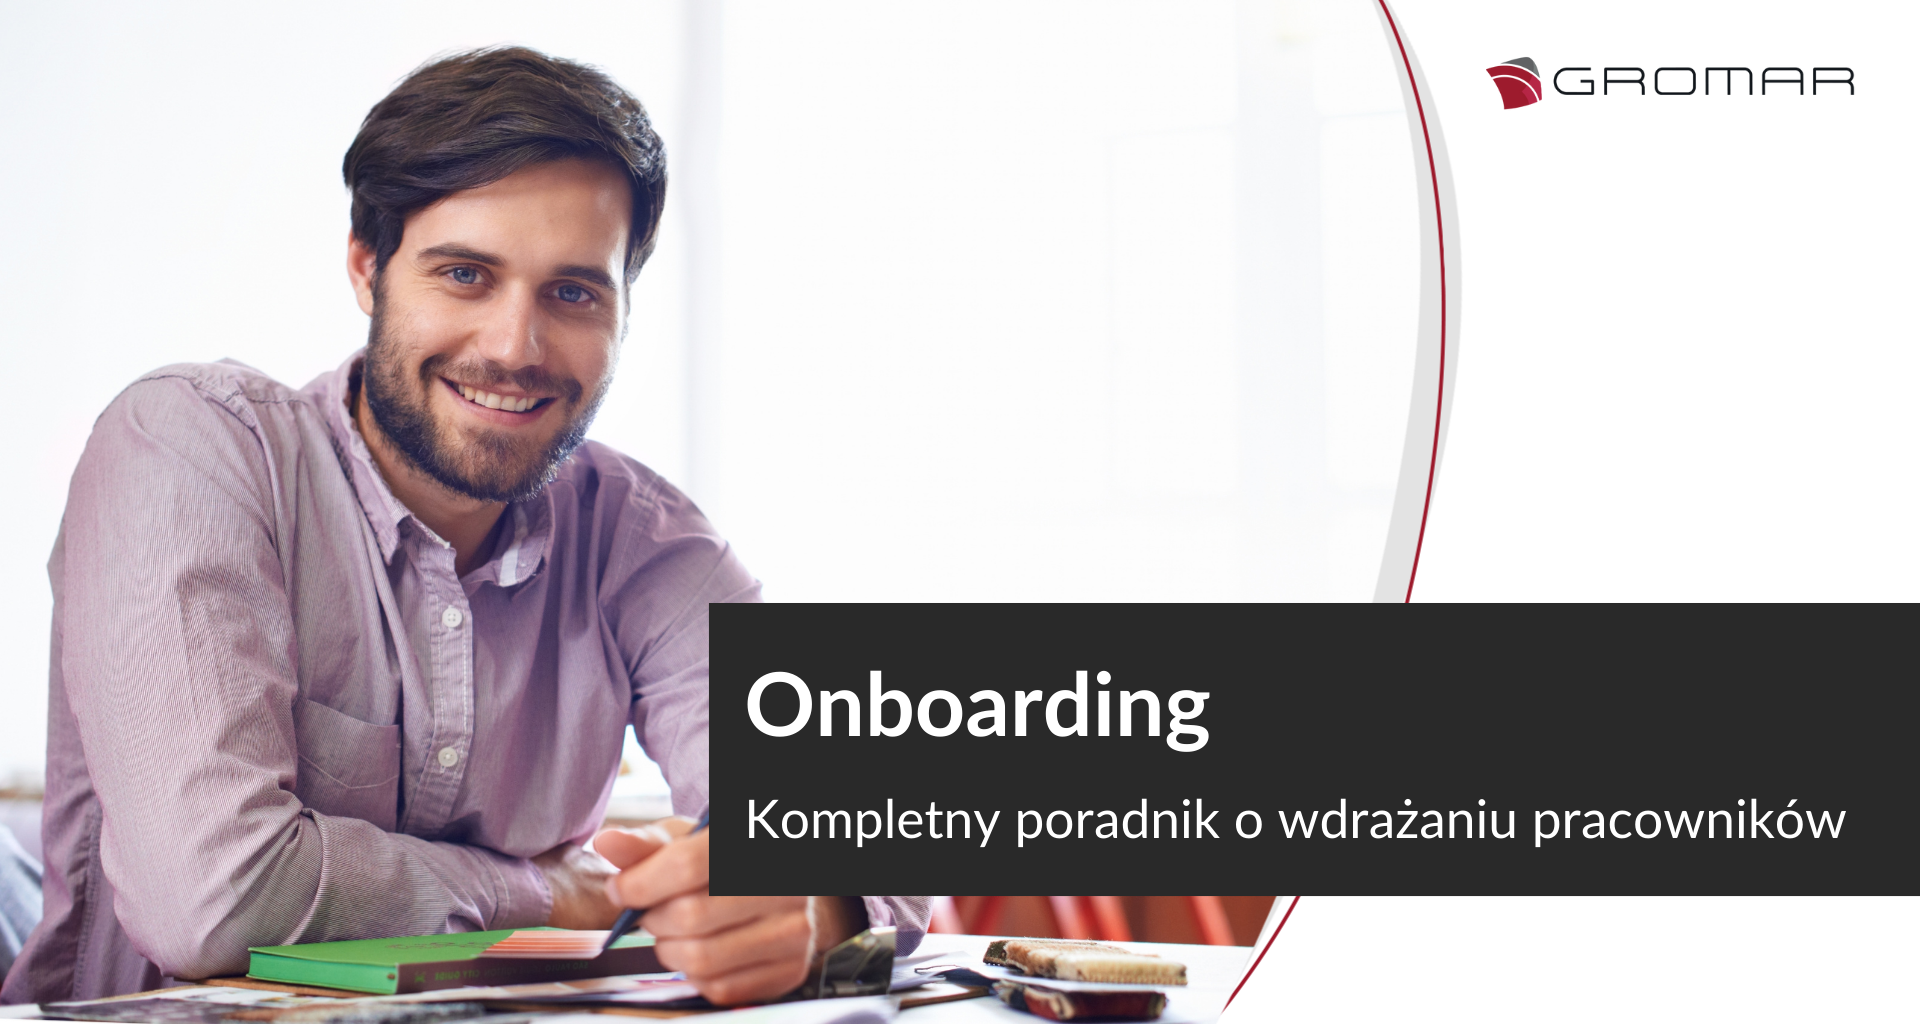 Onboarding: kompletny poradnik o onboardingu pracowników